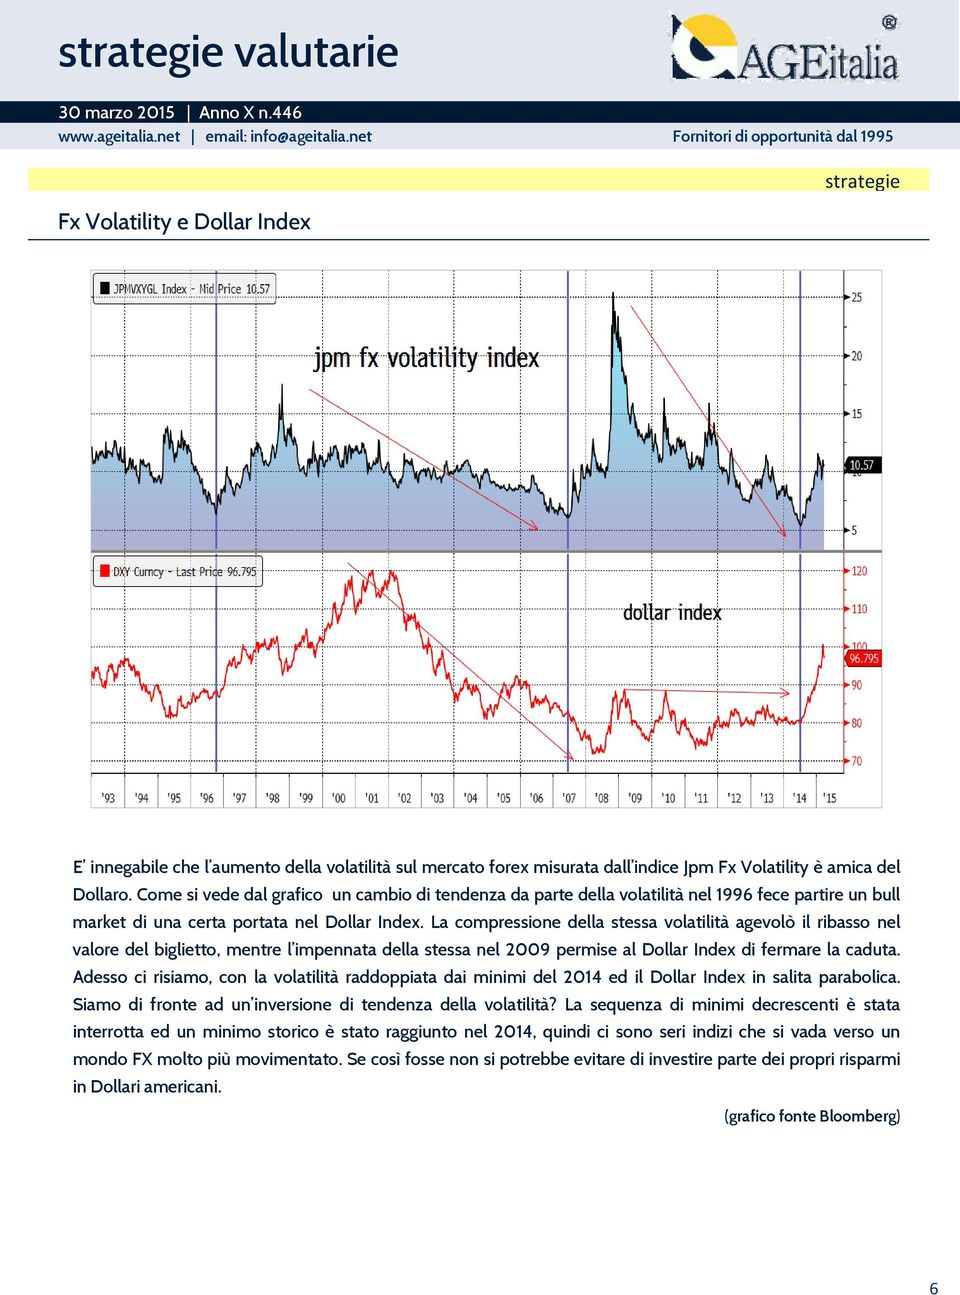 La compressione della stessa volatilità agevolò il ribasso nel valore del biglietto, mentre l impennata della stessa nel 2009 permise al Dollar Index di fermare la caduta.